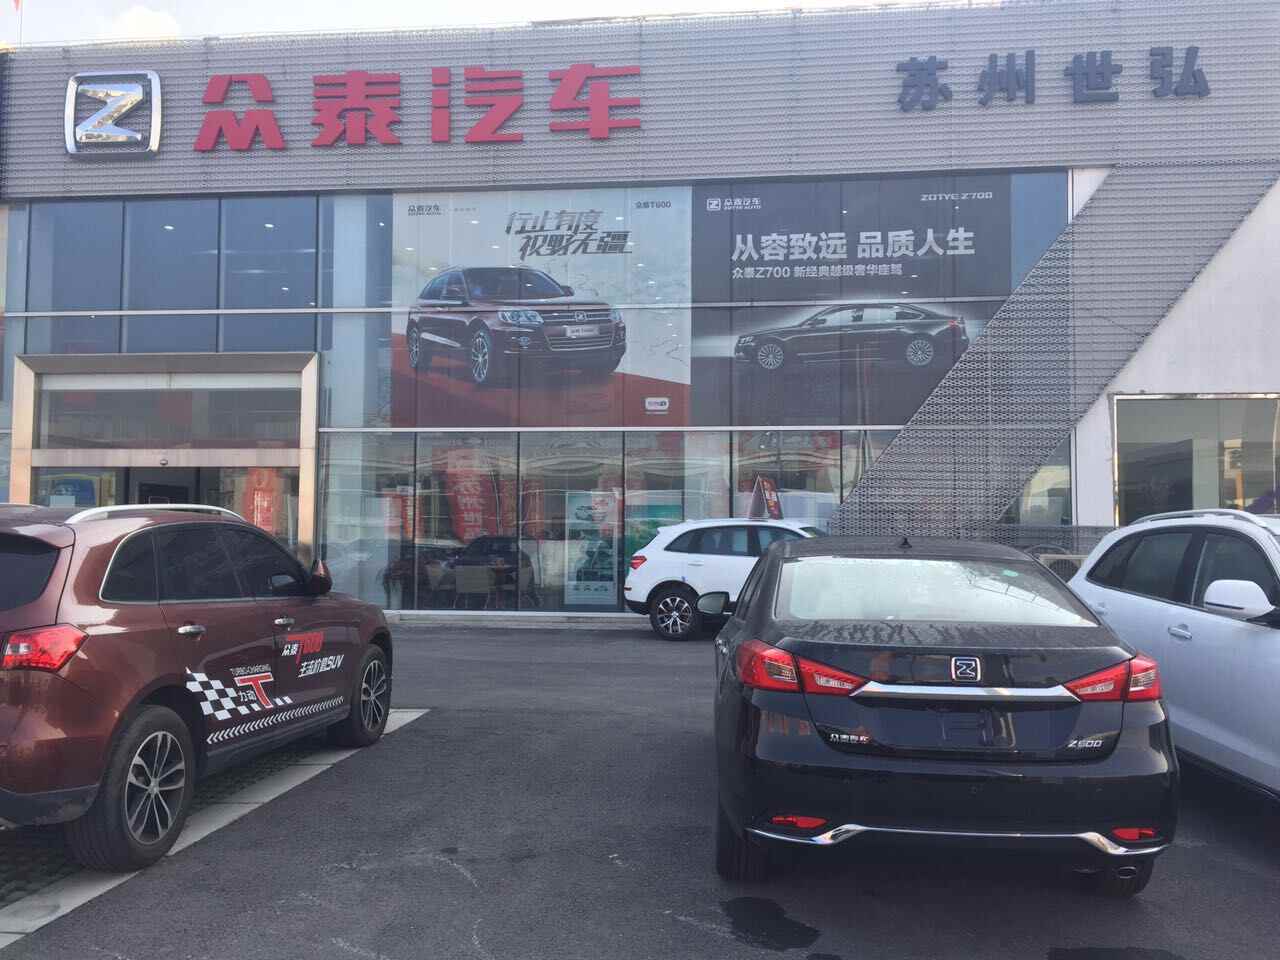 苏州世弘汽车销售有限公司4s店信息及最新众泰促销活动